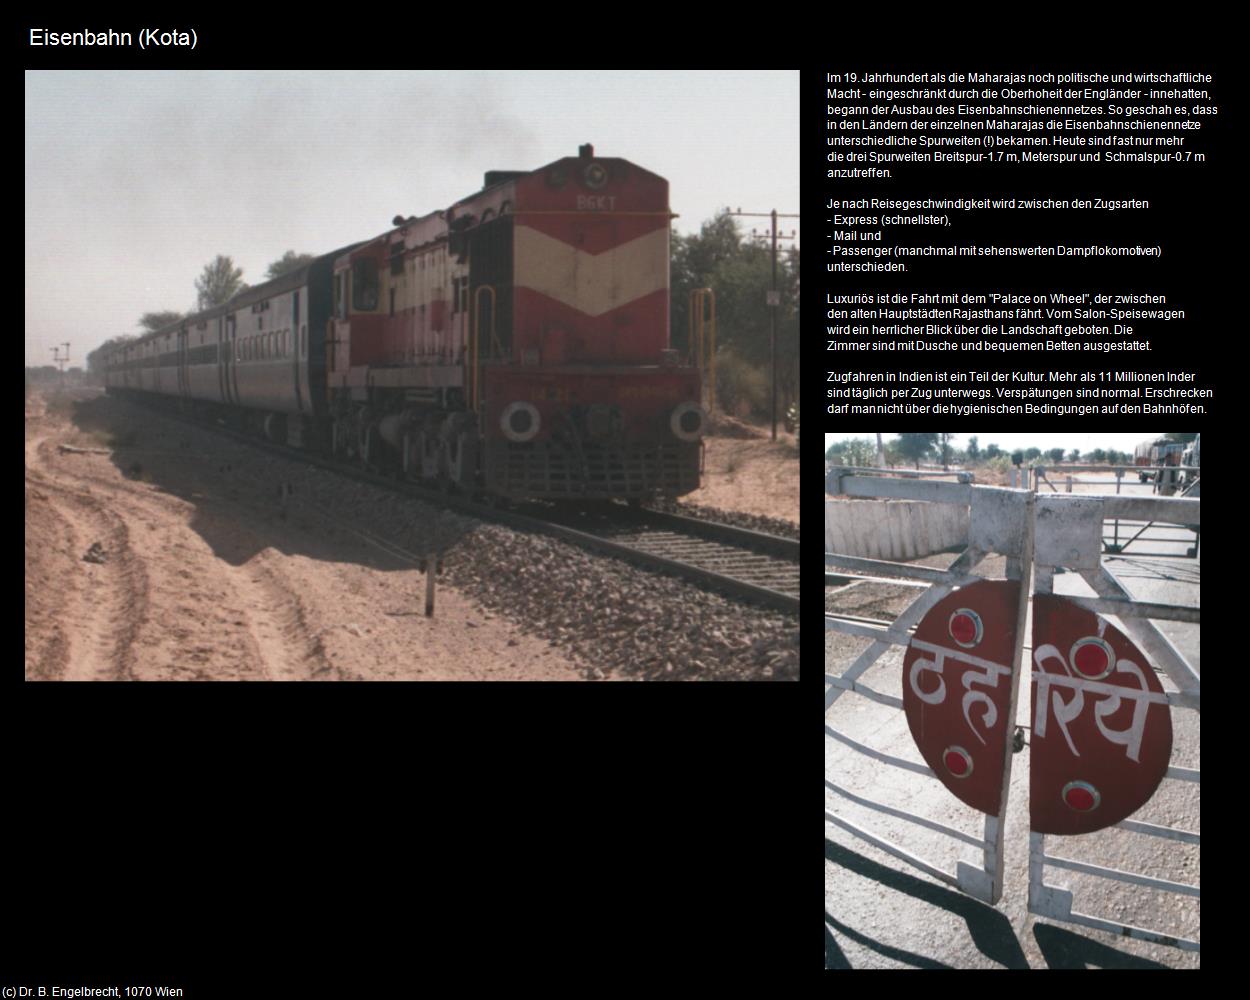 Eisenbahn (Kota) in Rajasthan - das Land der Könige